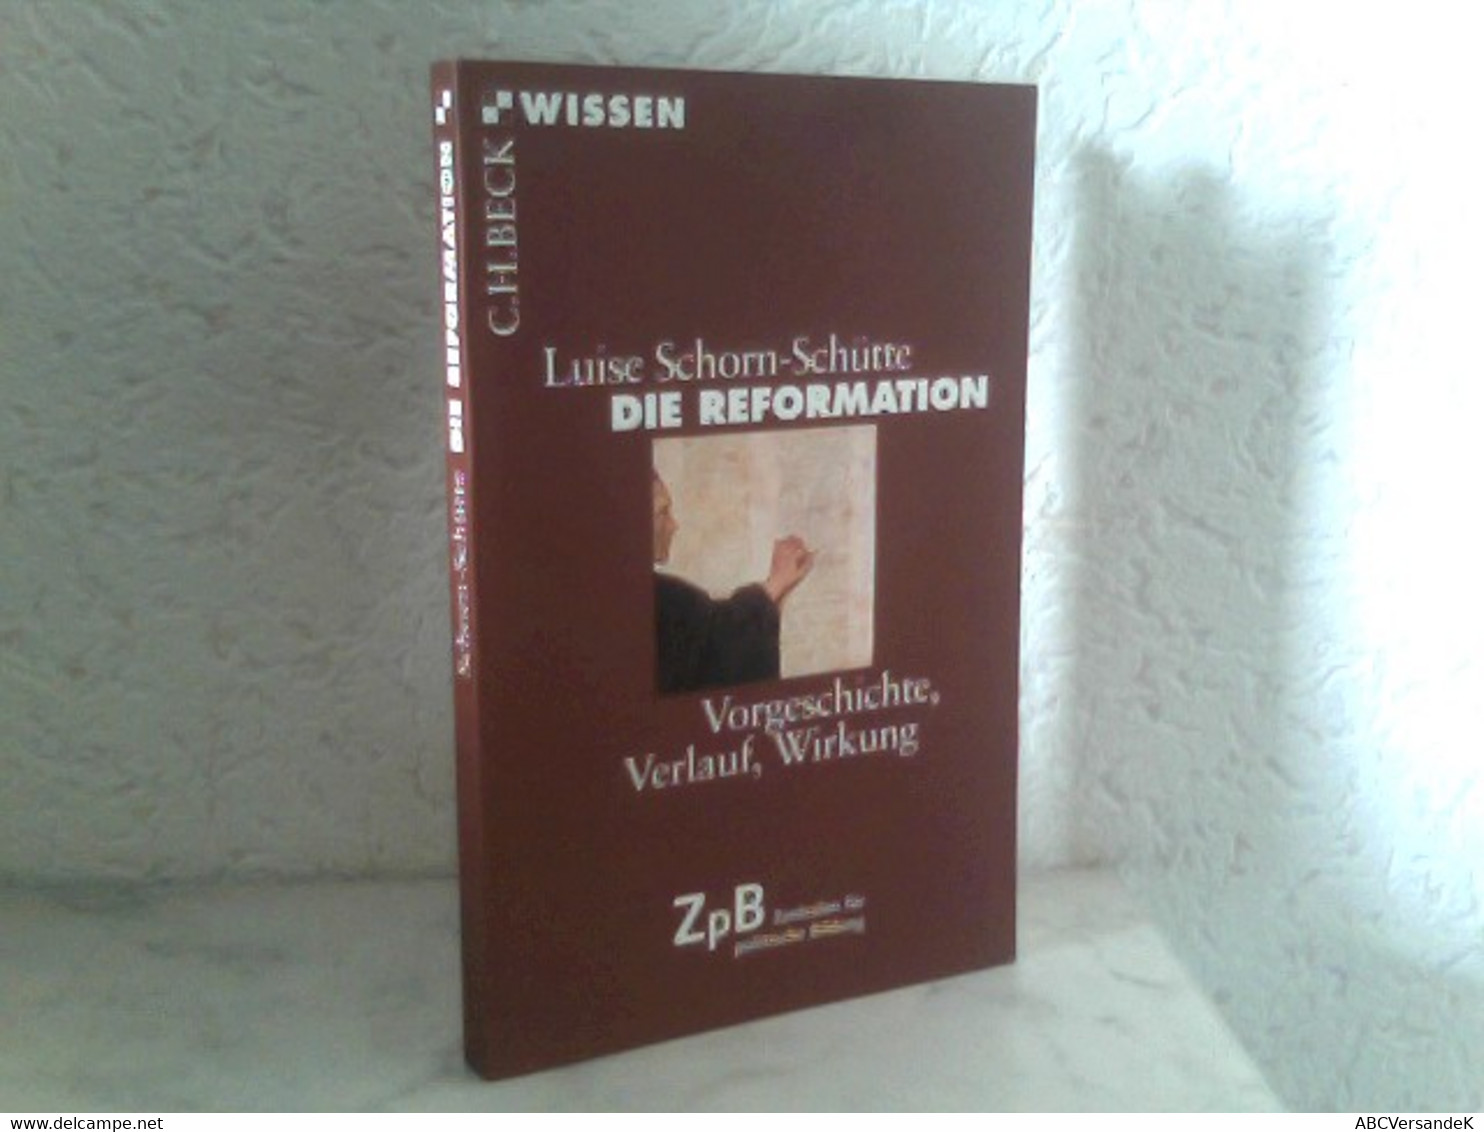 Die Reformation - Vorgeschichte, Verlauf, Wirkung - Politik & Zeitgeschichte